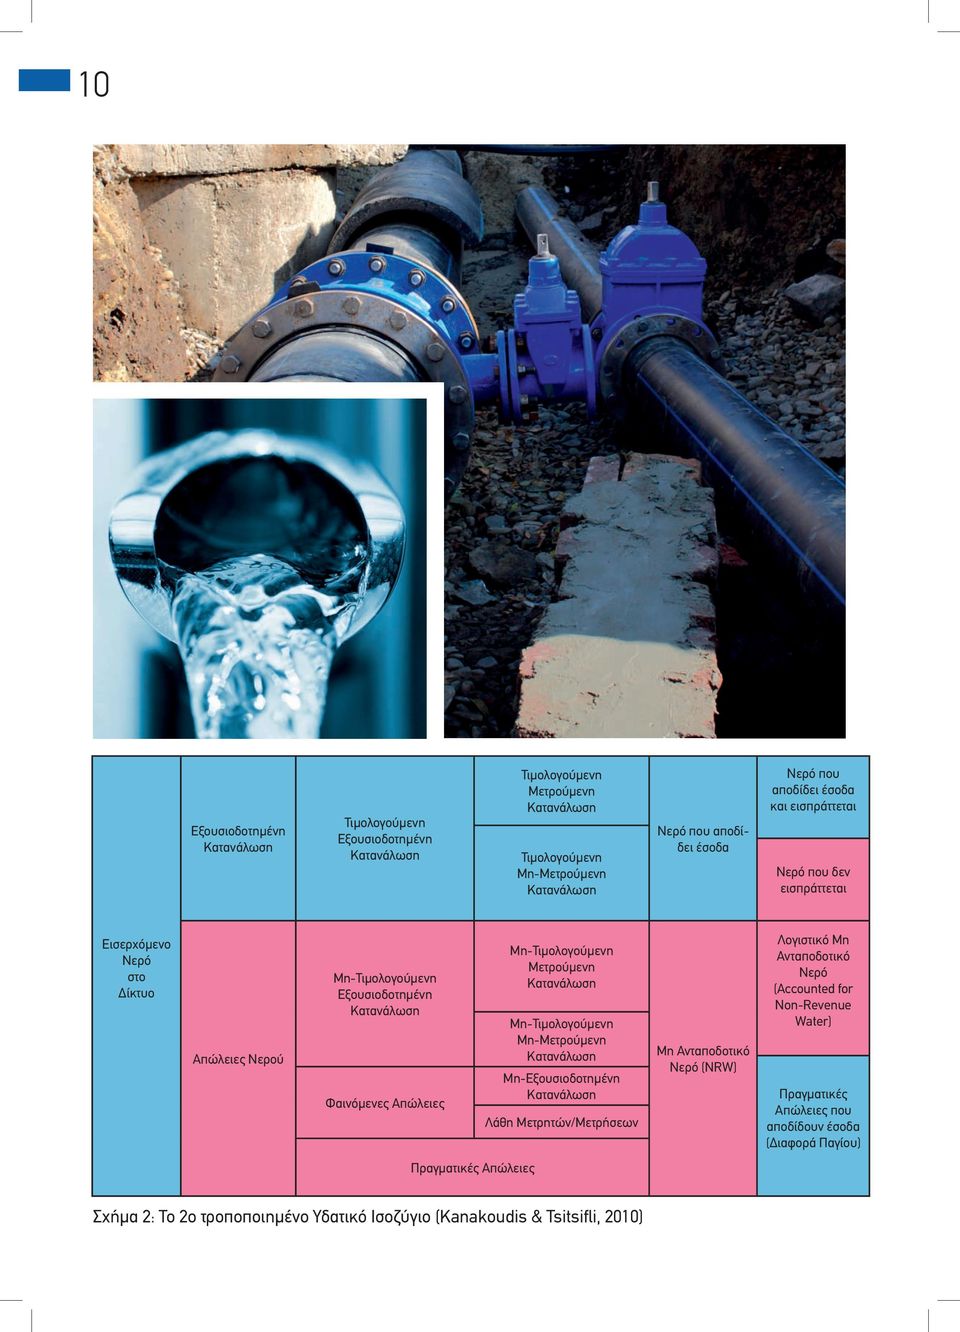 Μετρούμενη Μη-Τιμολογούμενη Mη-Μετρούμενη Μη-Εξουσιοδοτημένη Λάθη Μετρητών/Μετρήσεων Μη Ανταποδοτικό Νερό (NRW) Λογιστικό Μη Ανταποδοτικό Νερό (Accounted for